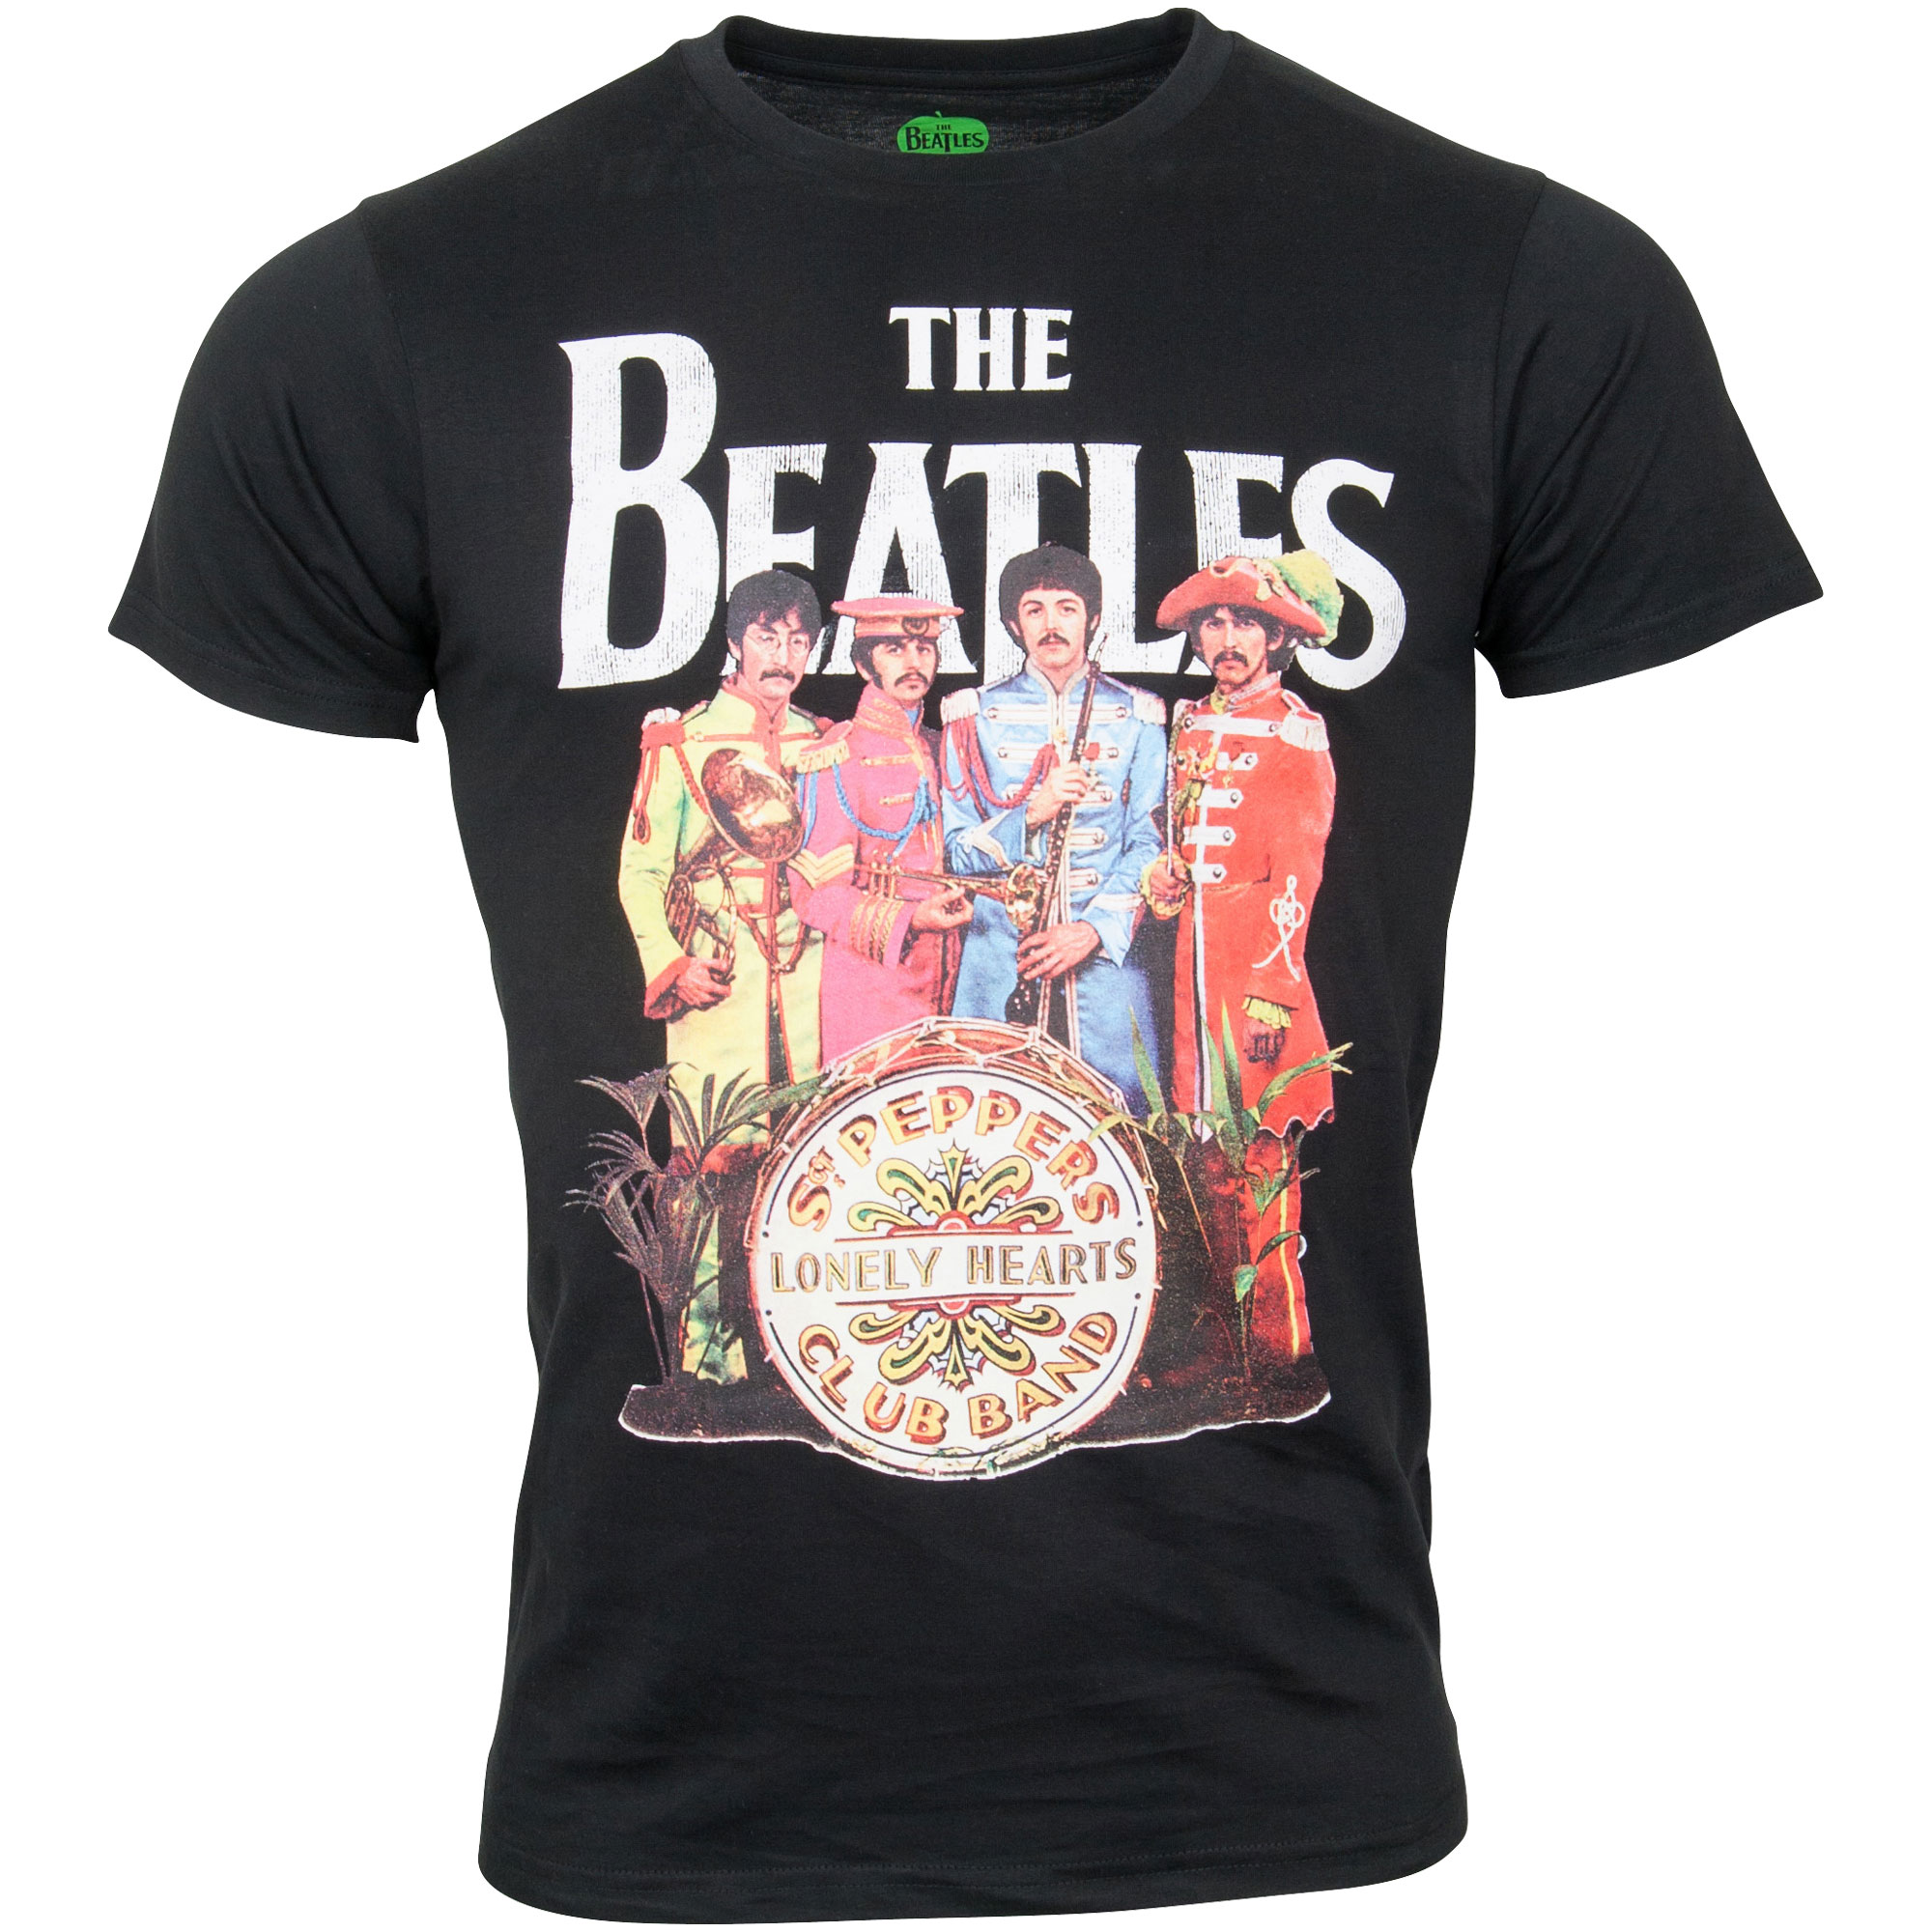 The Beatles - T-Shirt Sgt. Pepper - schwarz